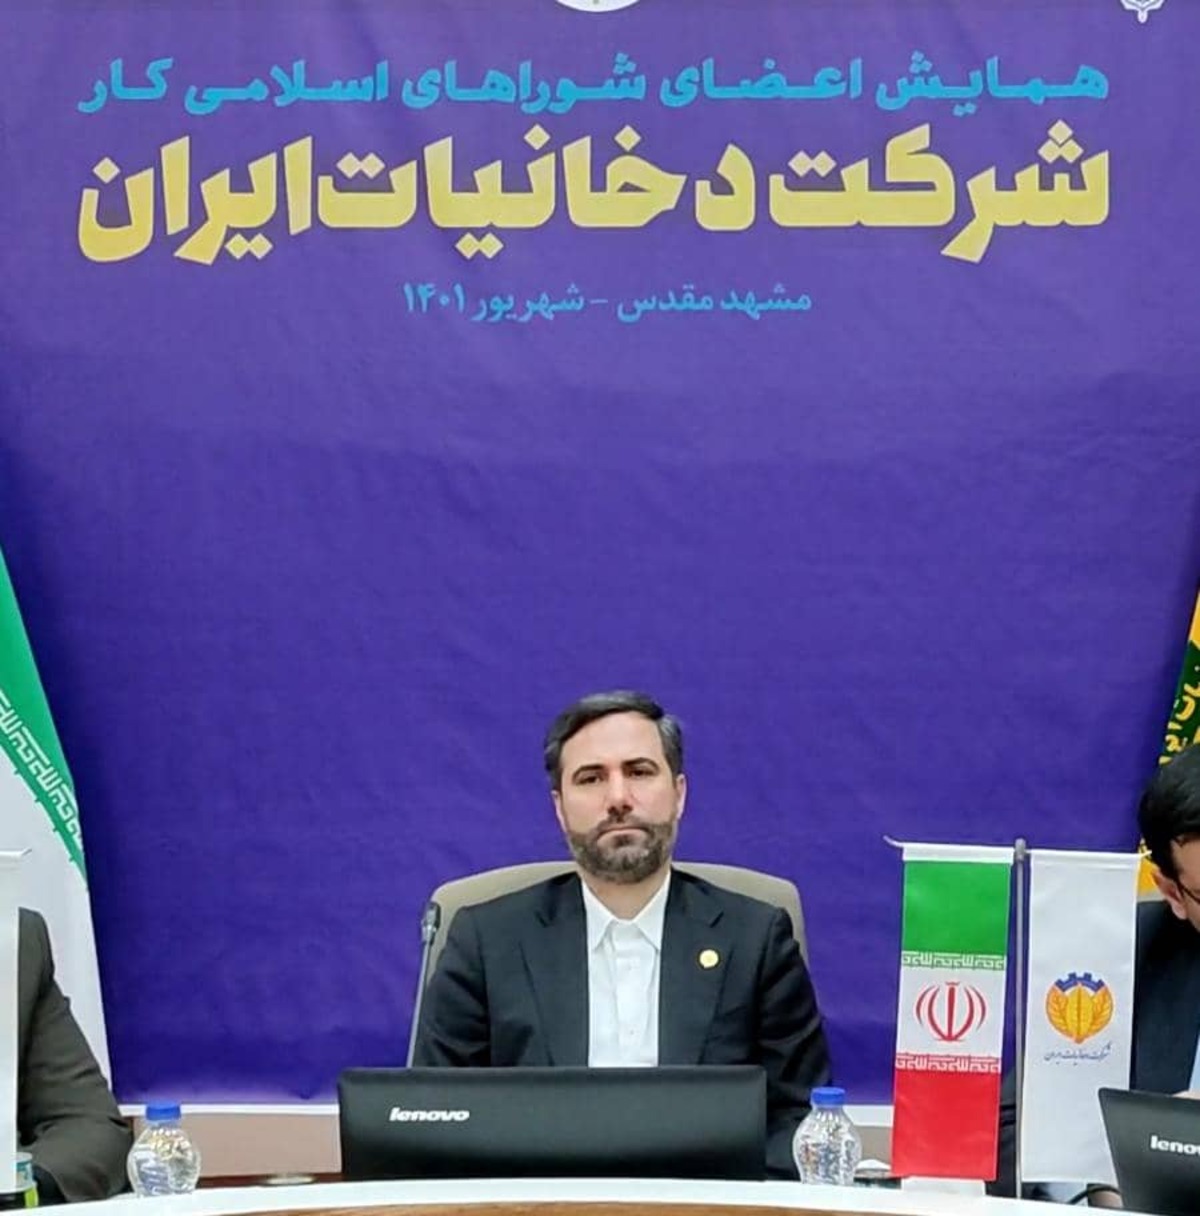 پشت پرده بدهی پنچ هزار میلیارد تومانی شرکت دخانیات ایران